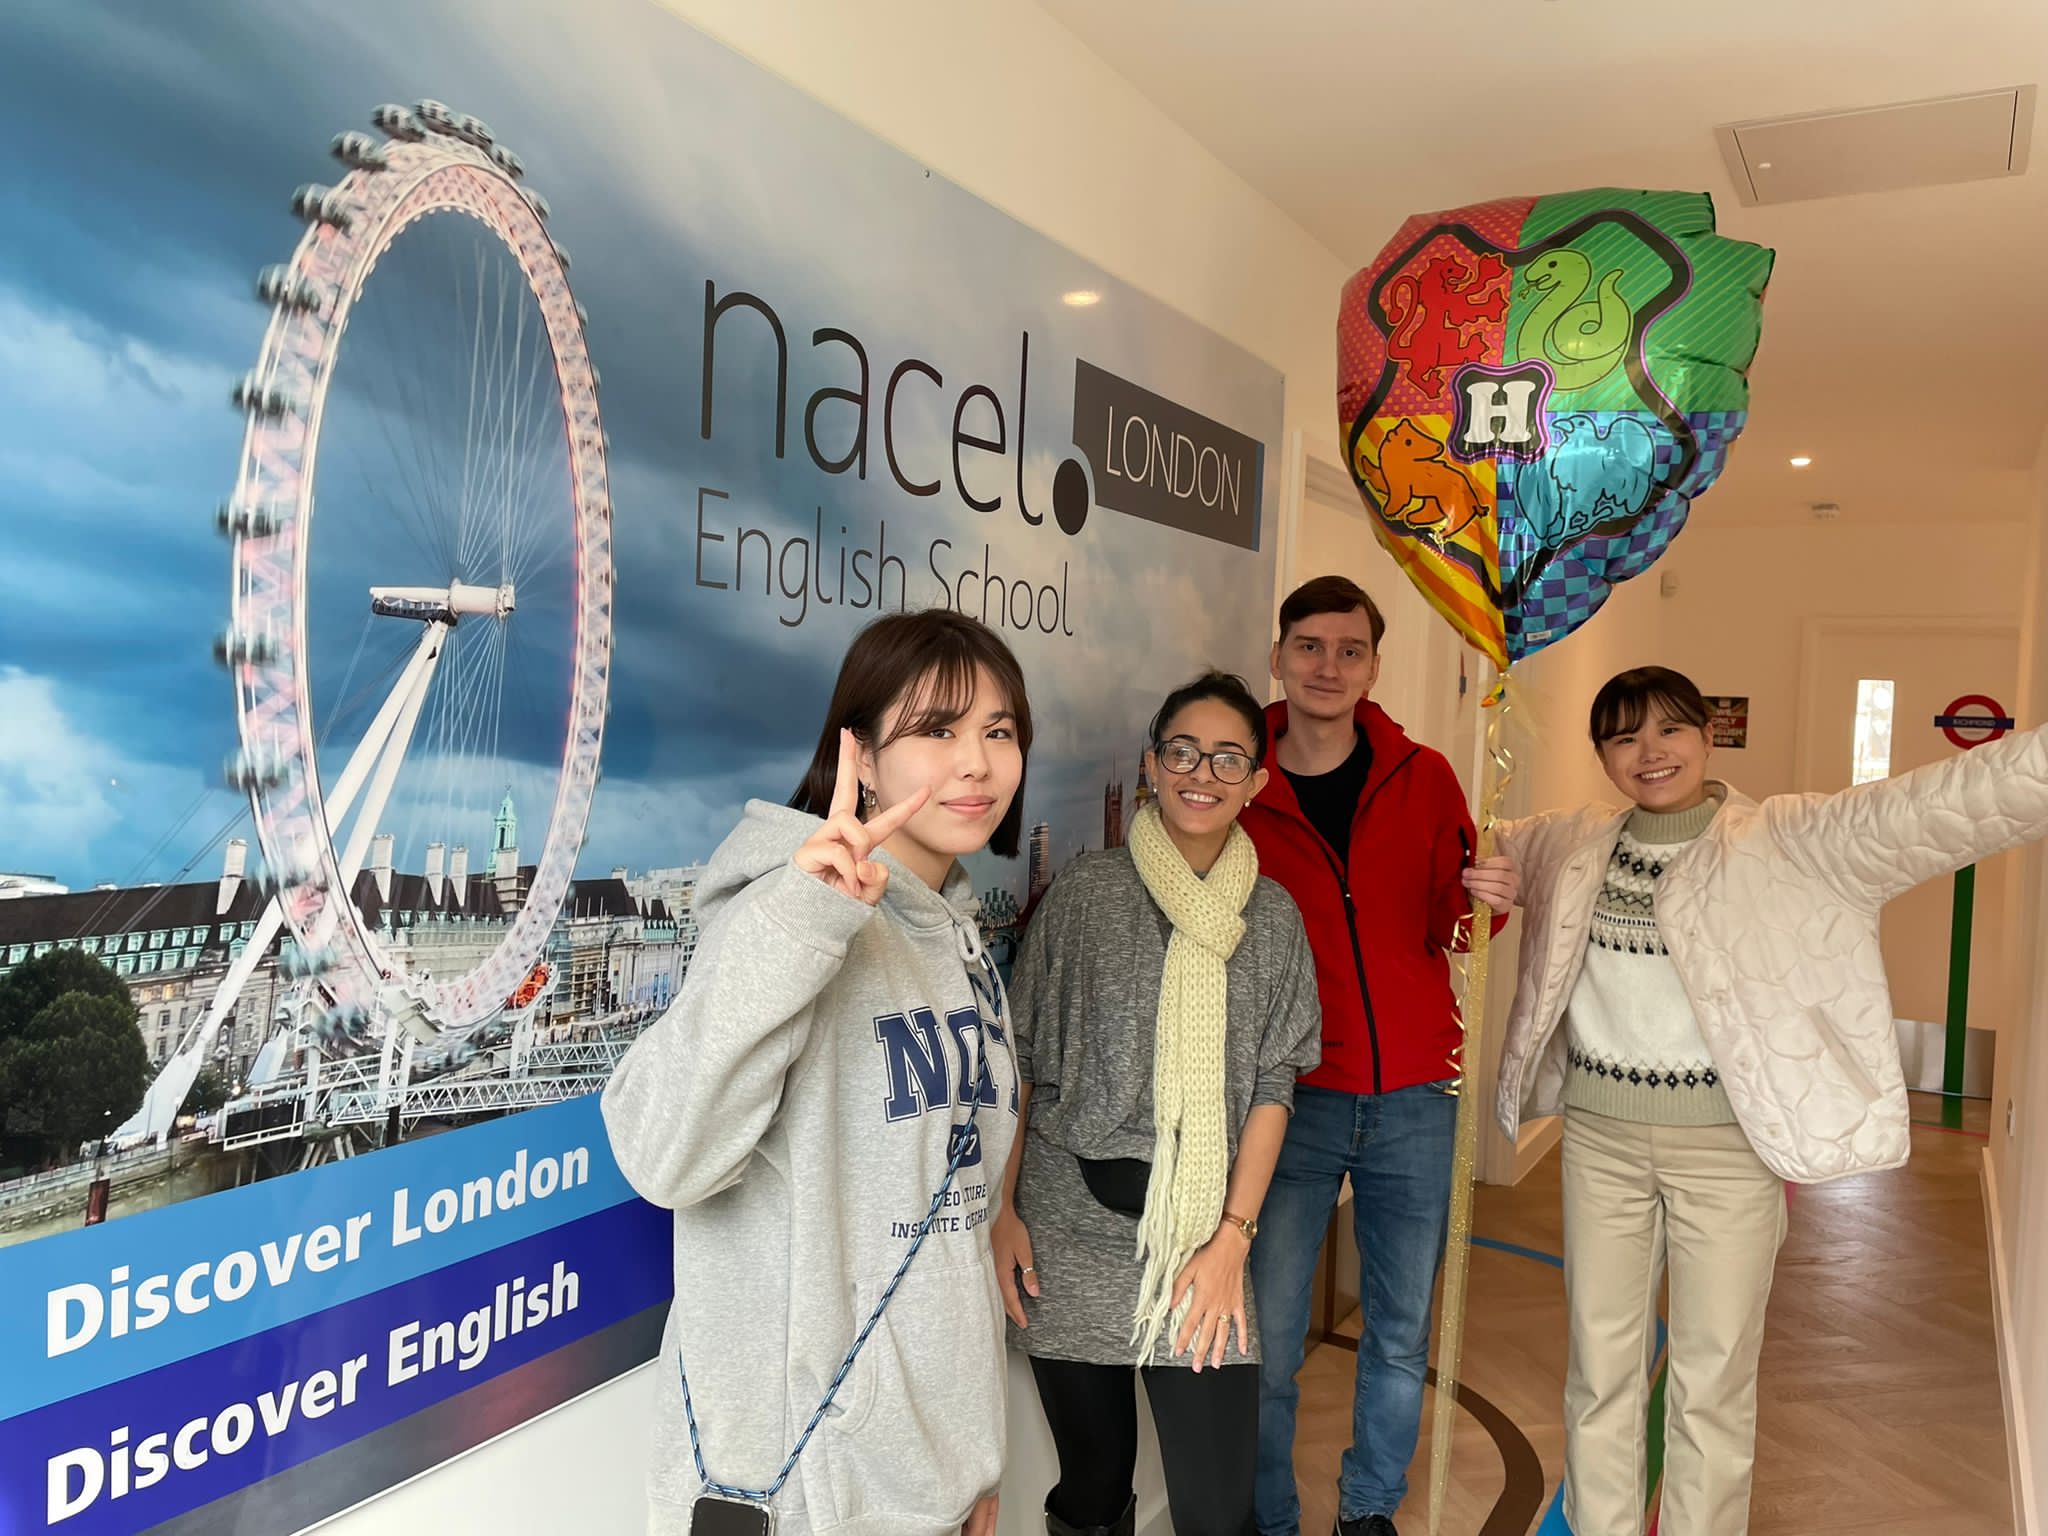 اختبارات TOEFL وIELTS - قم بإعداد اختبار اللغة الإنجليزية الخاص بك في Nacel English School London